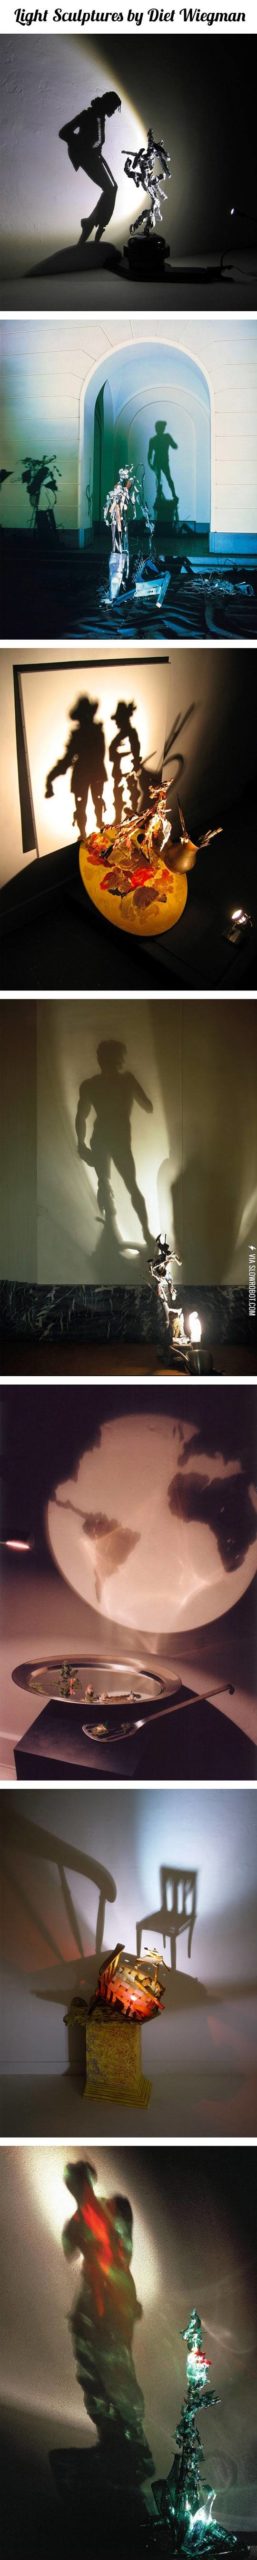 Light+sculptures.